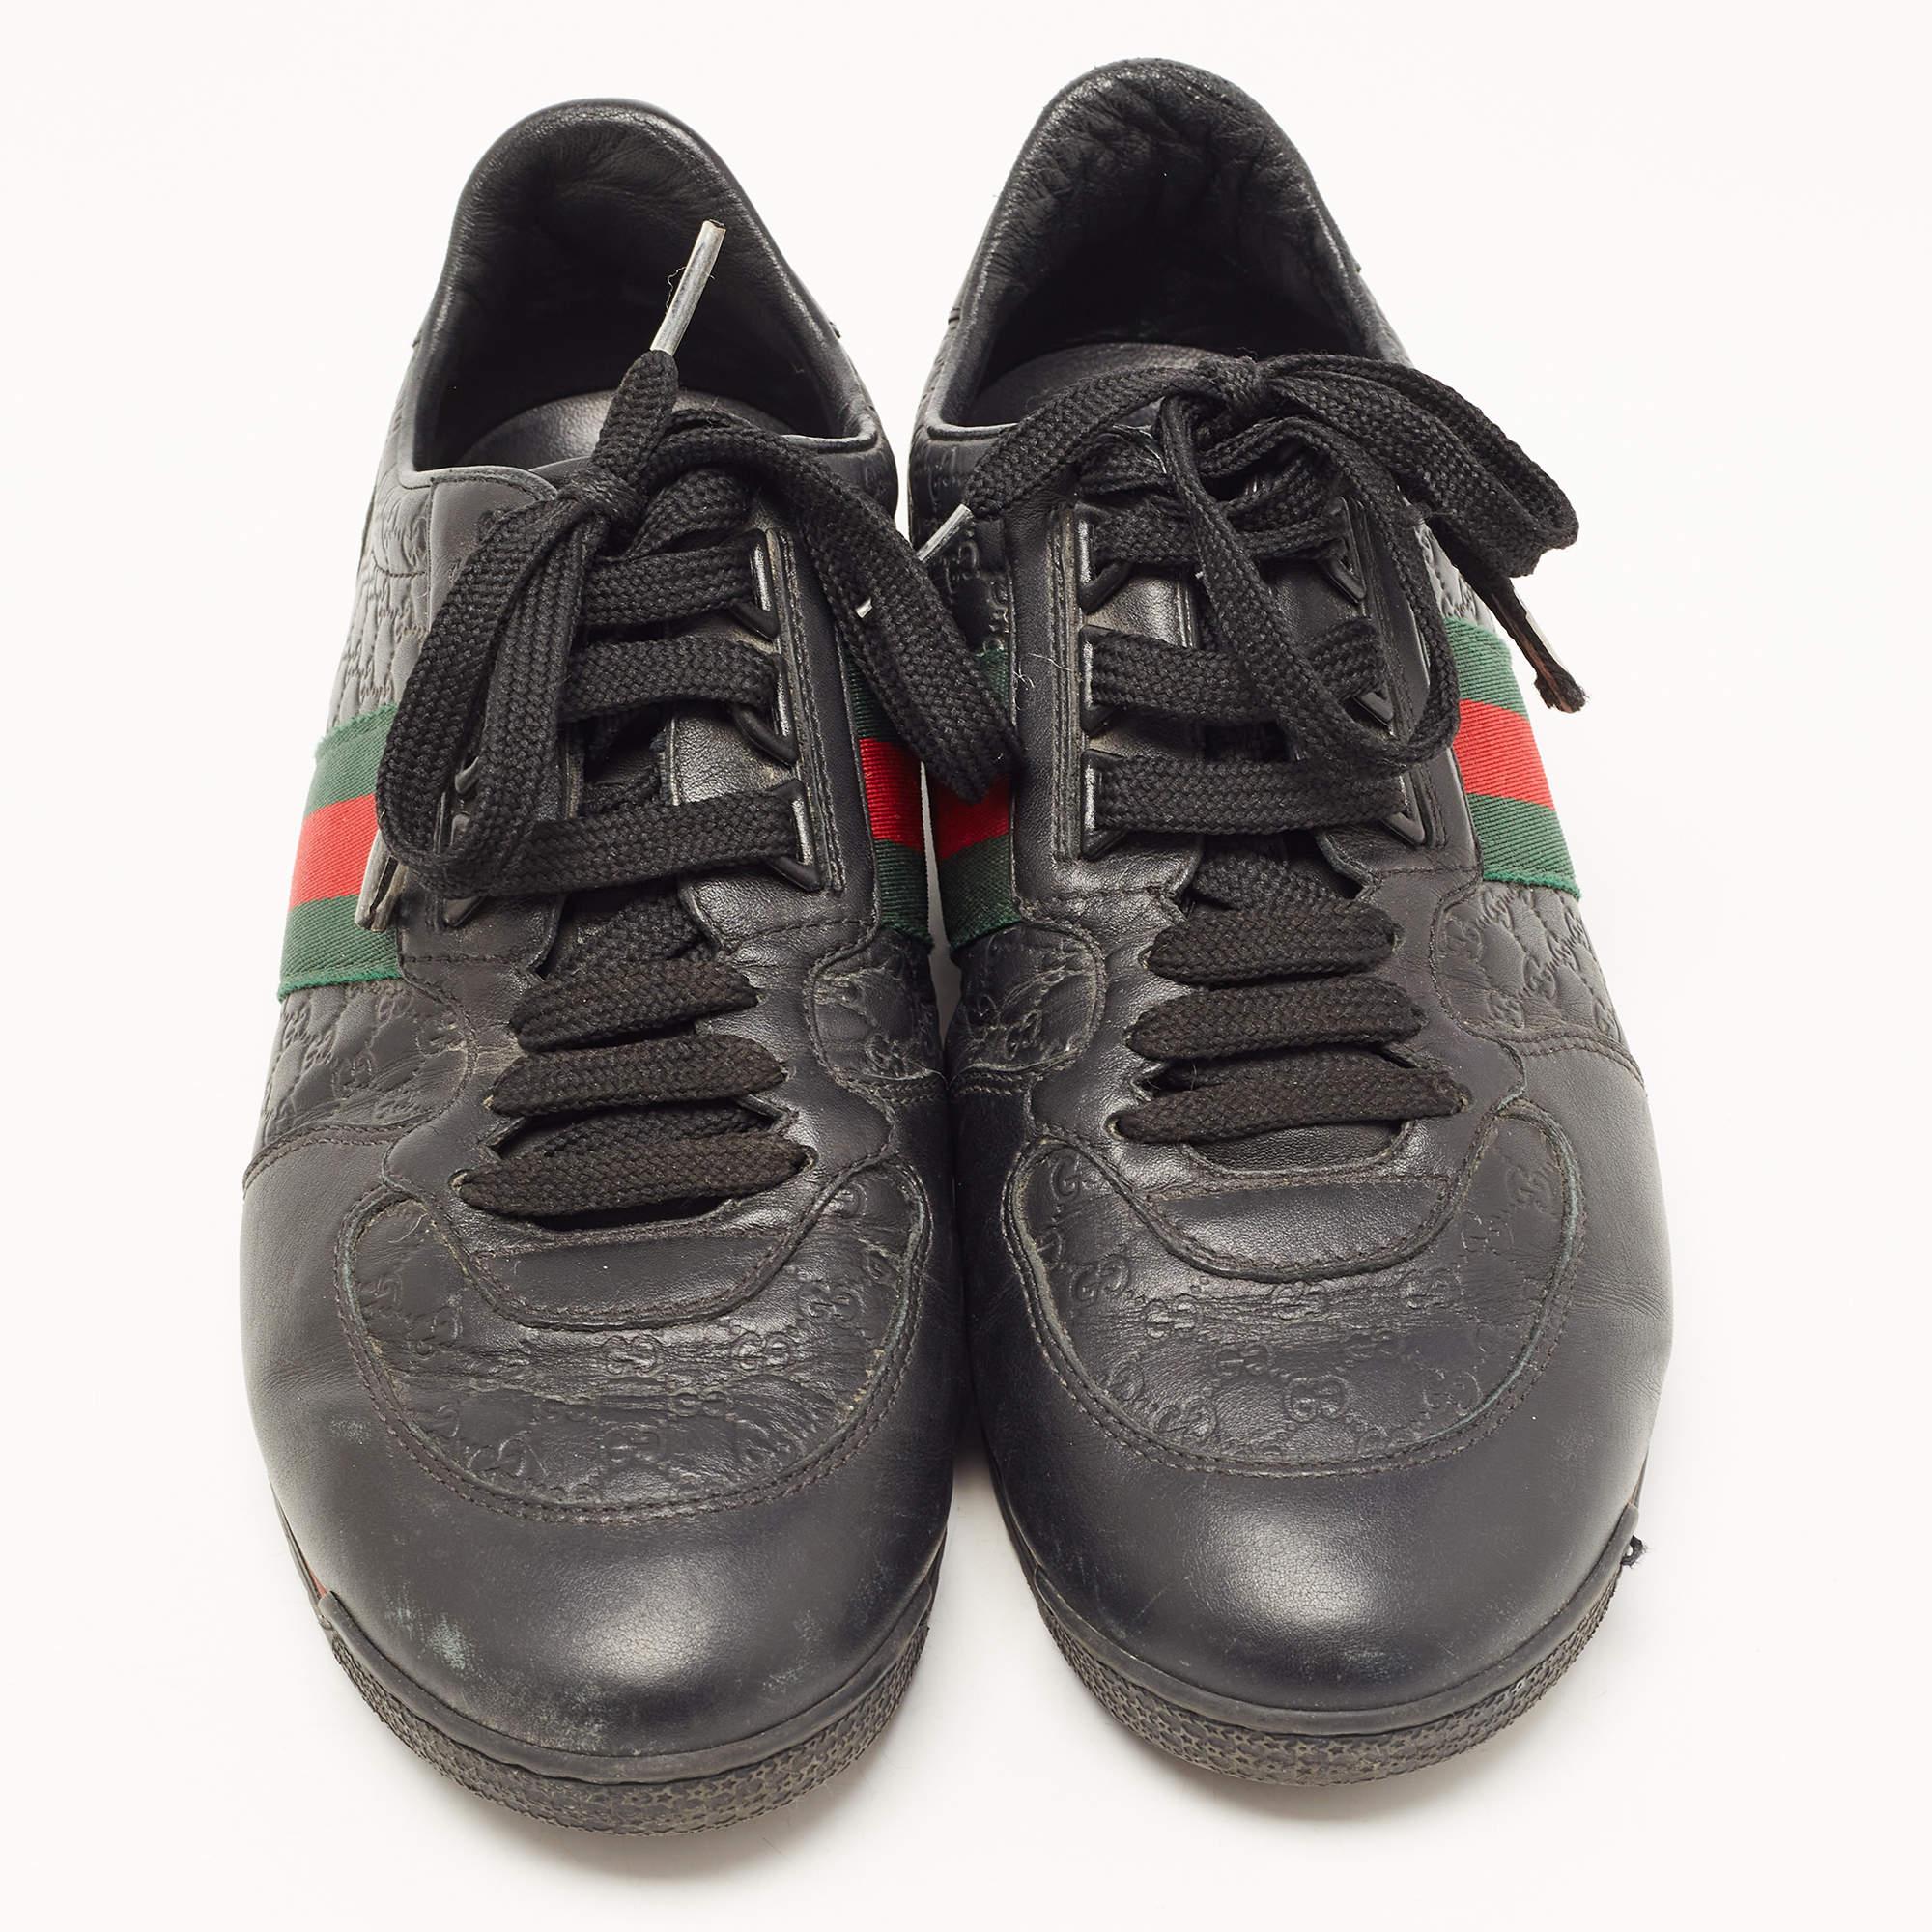 Gucci Black Microguccissima Leather Web Low Top Sneakers Size 40.5 In Good Condition For Sale In Dubai, Al Qouz 2